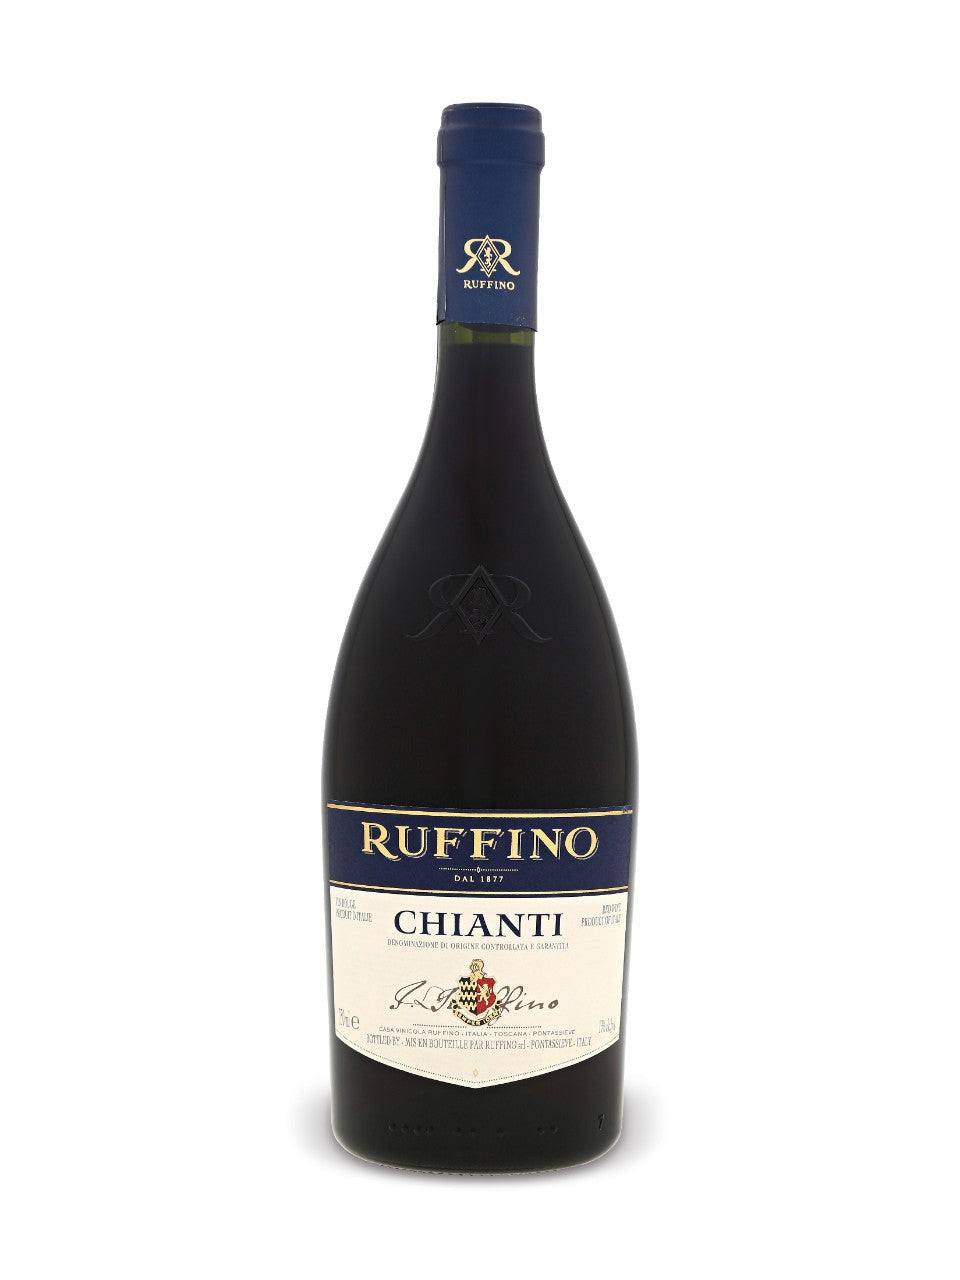 Ruffino Chianti 750 ml bottle